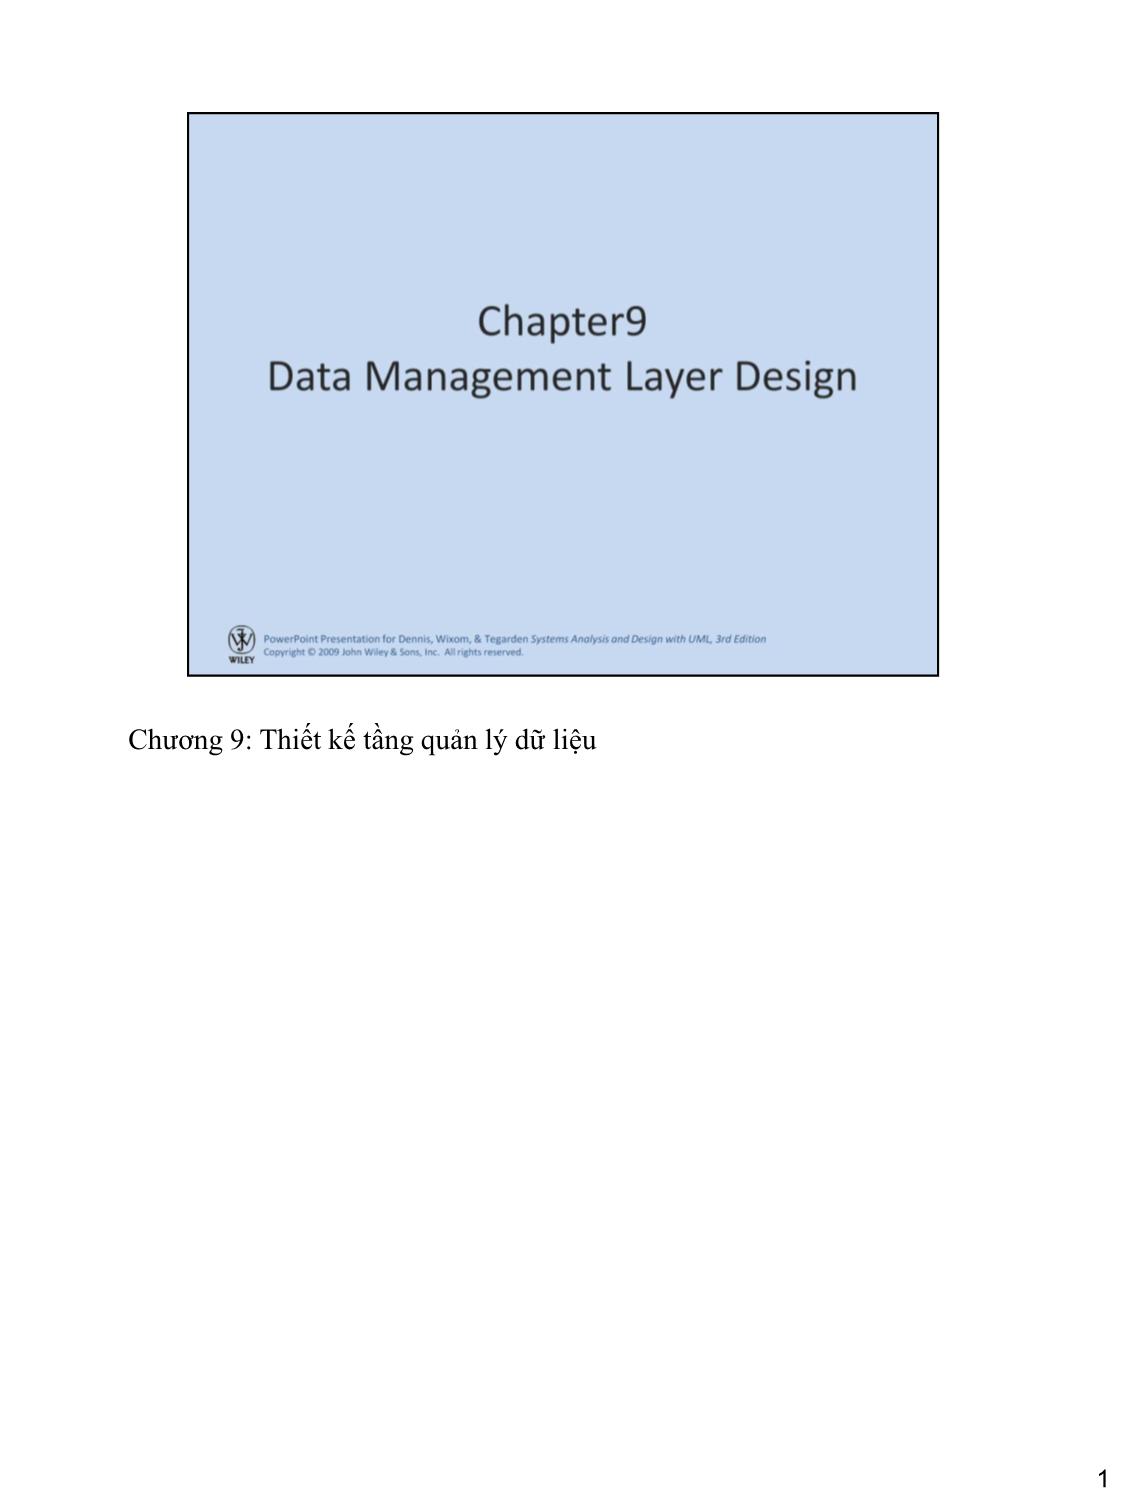 Bài giảng Hệ thống thông tin quản lý - Chương 9: Thiết kế tầng quản lý dữ liệu trang 1